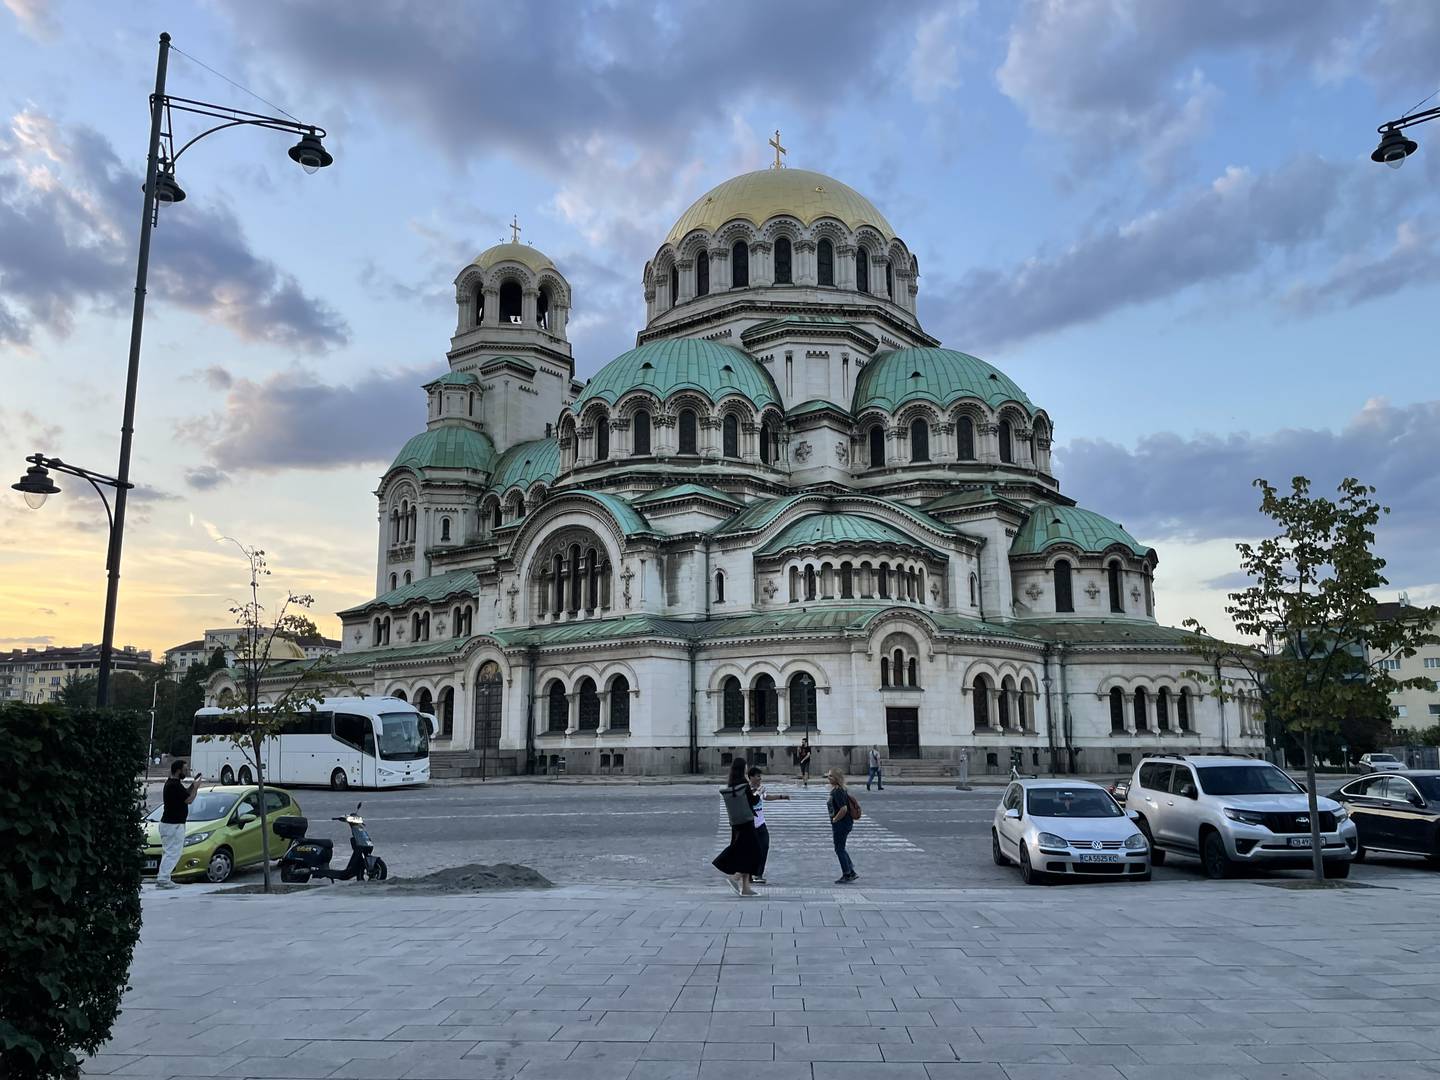 La majestuosa catedral ortodoxa Alejandro Nevski en Sofía, la capital de Bulgaria.